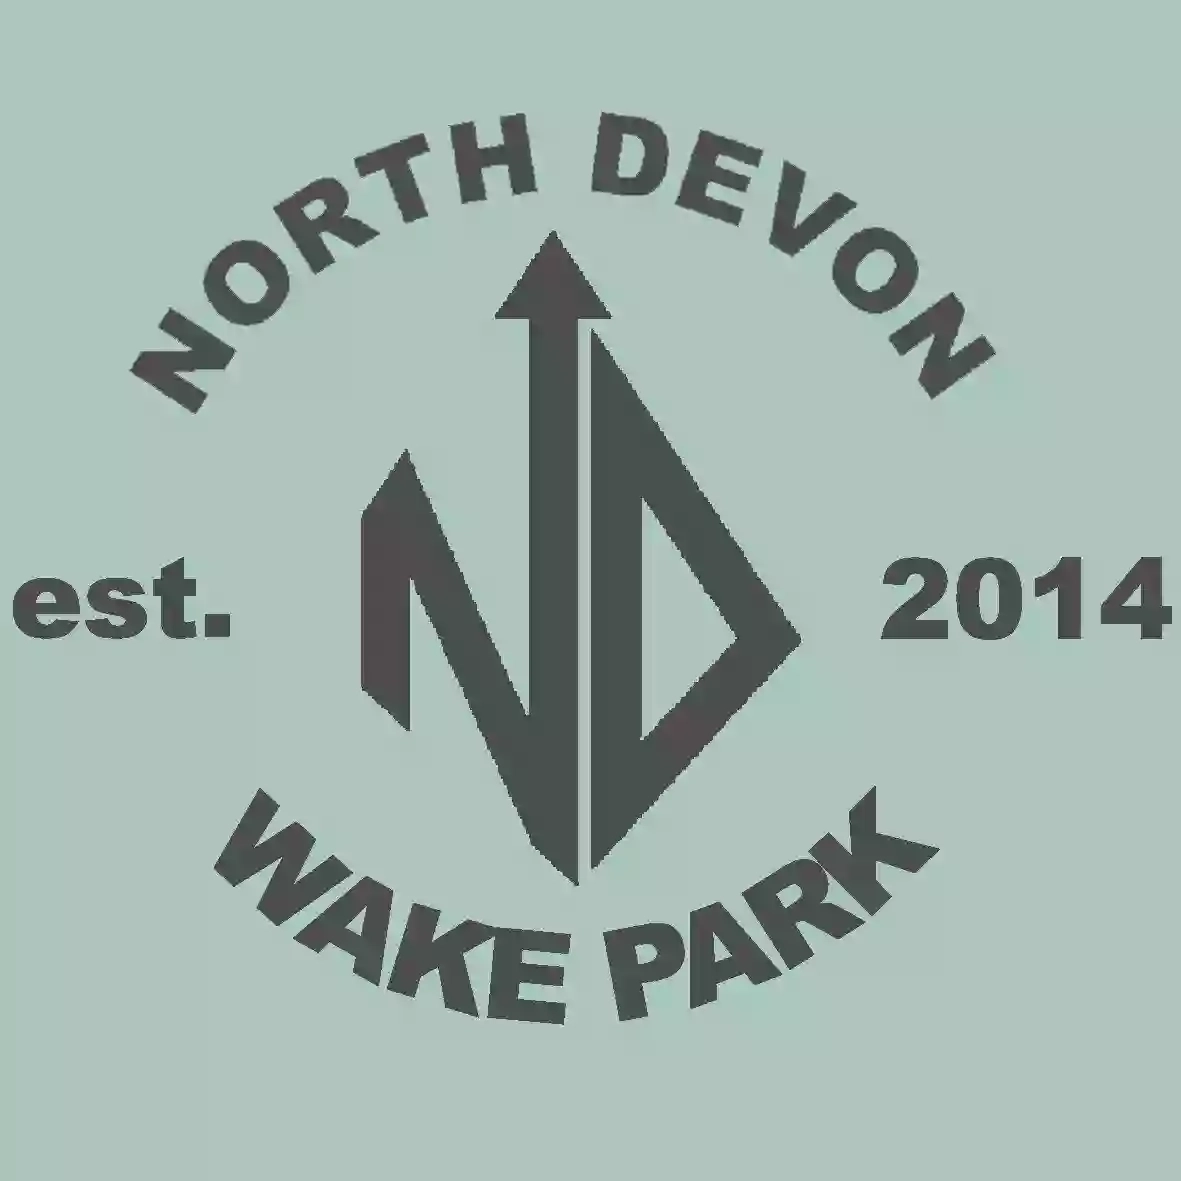 North Devon Wake Park